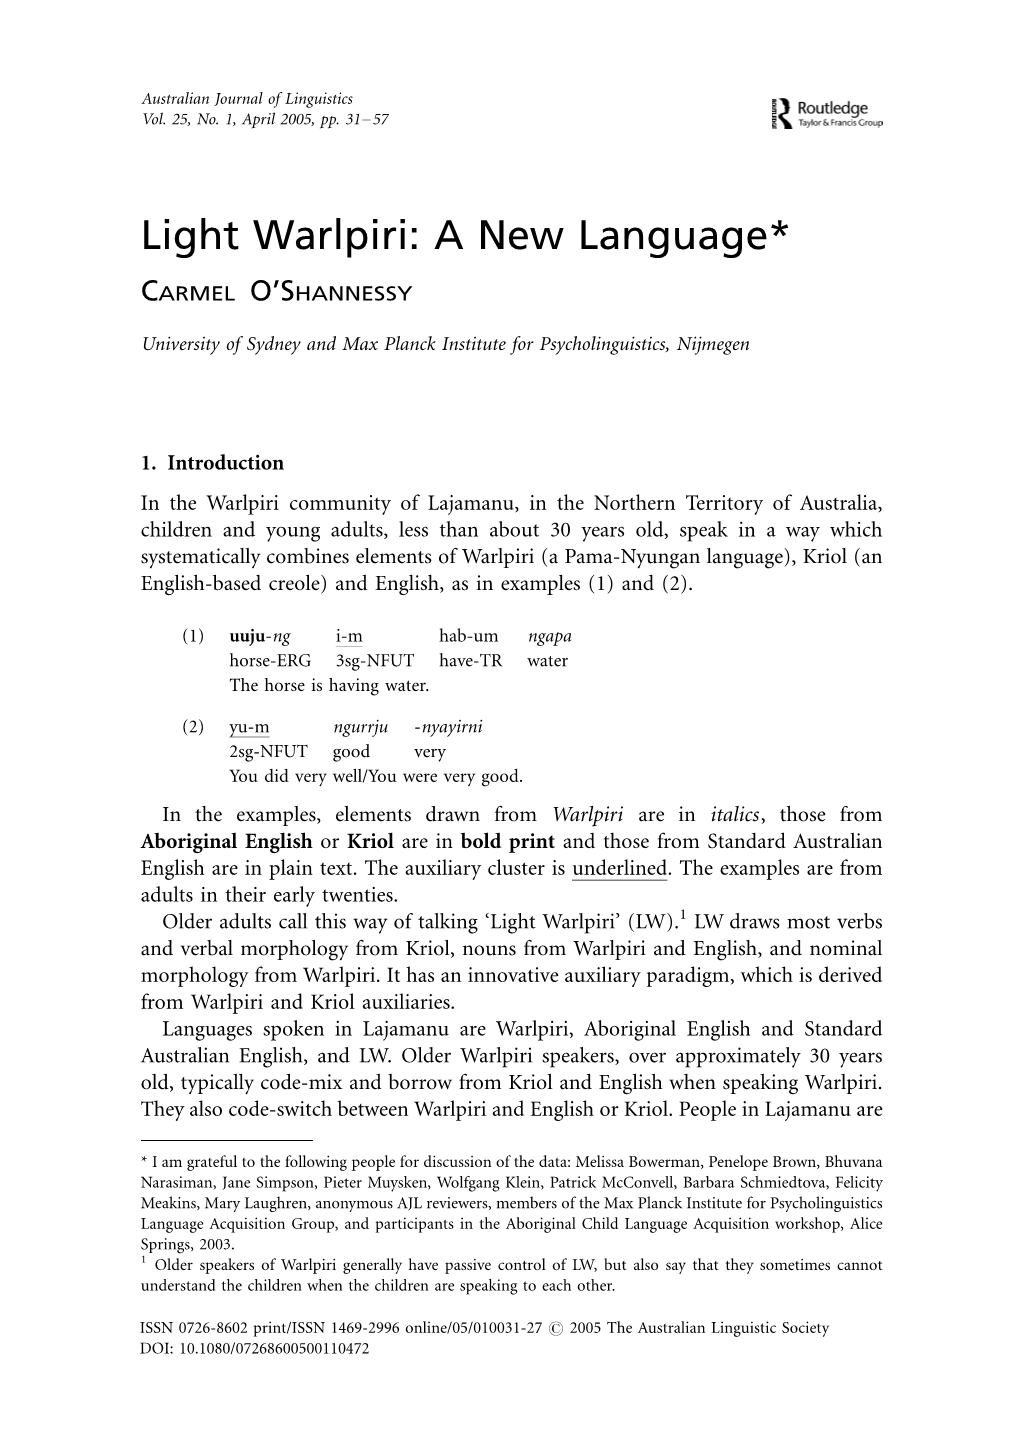 Light Warlpiri: a New Language*